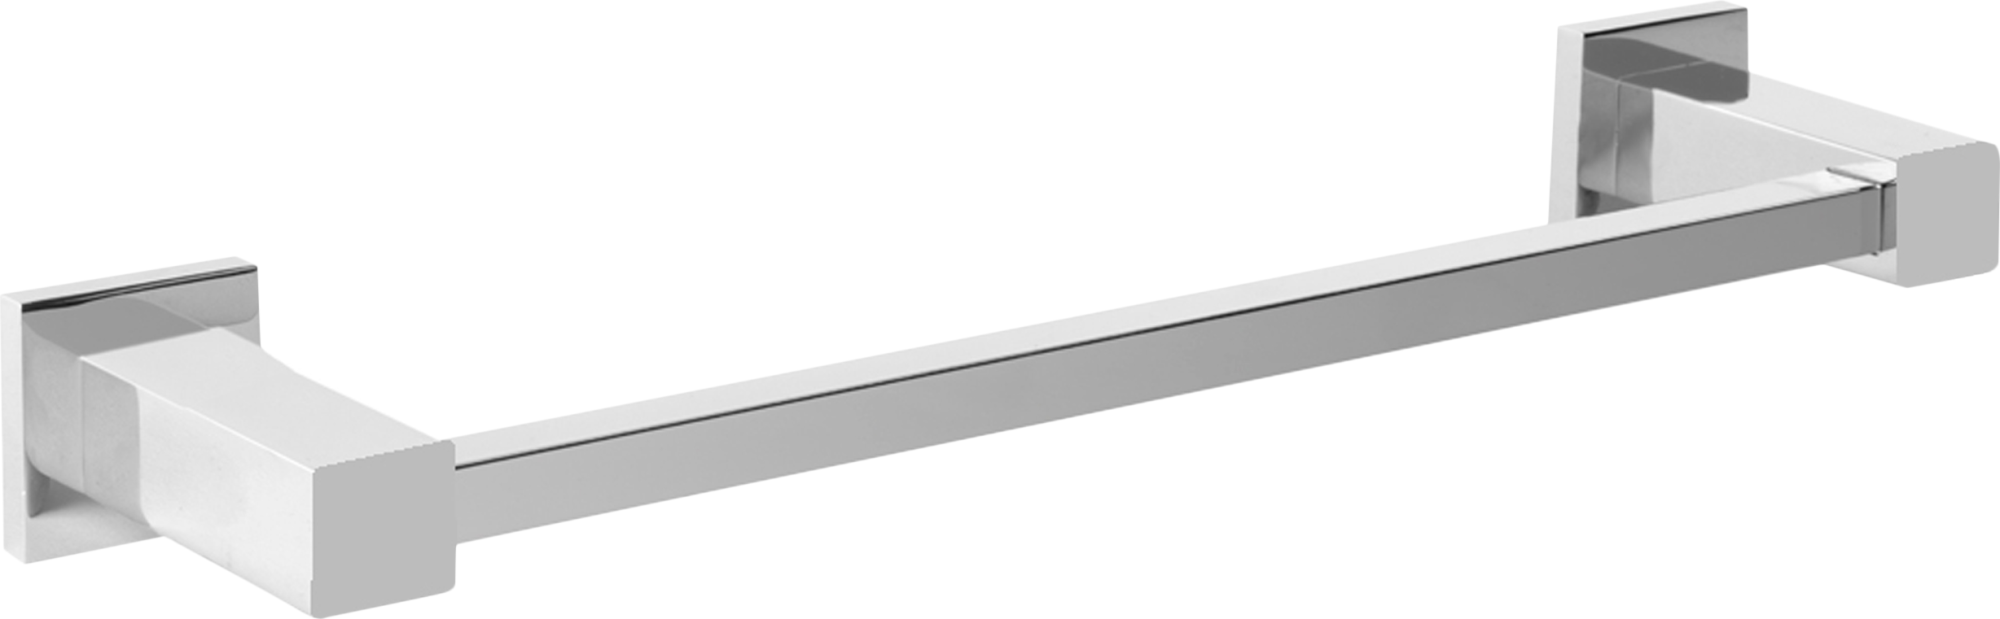 Toallero skip gris / plata brillante 44x4 cm